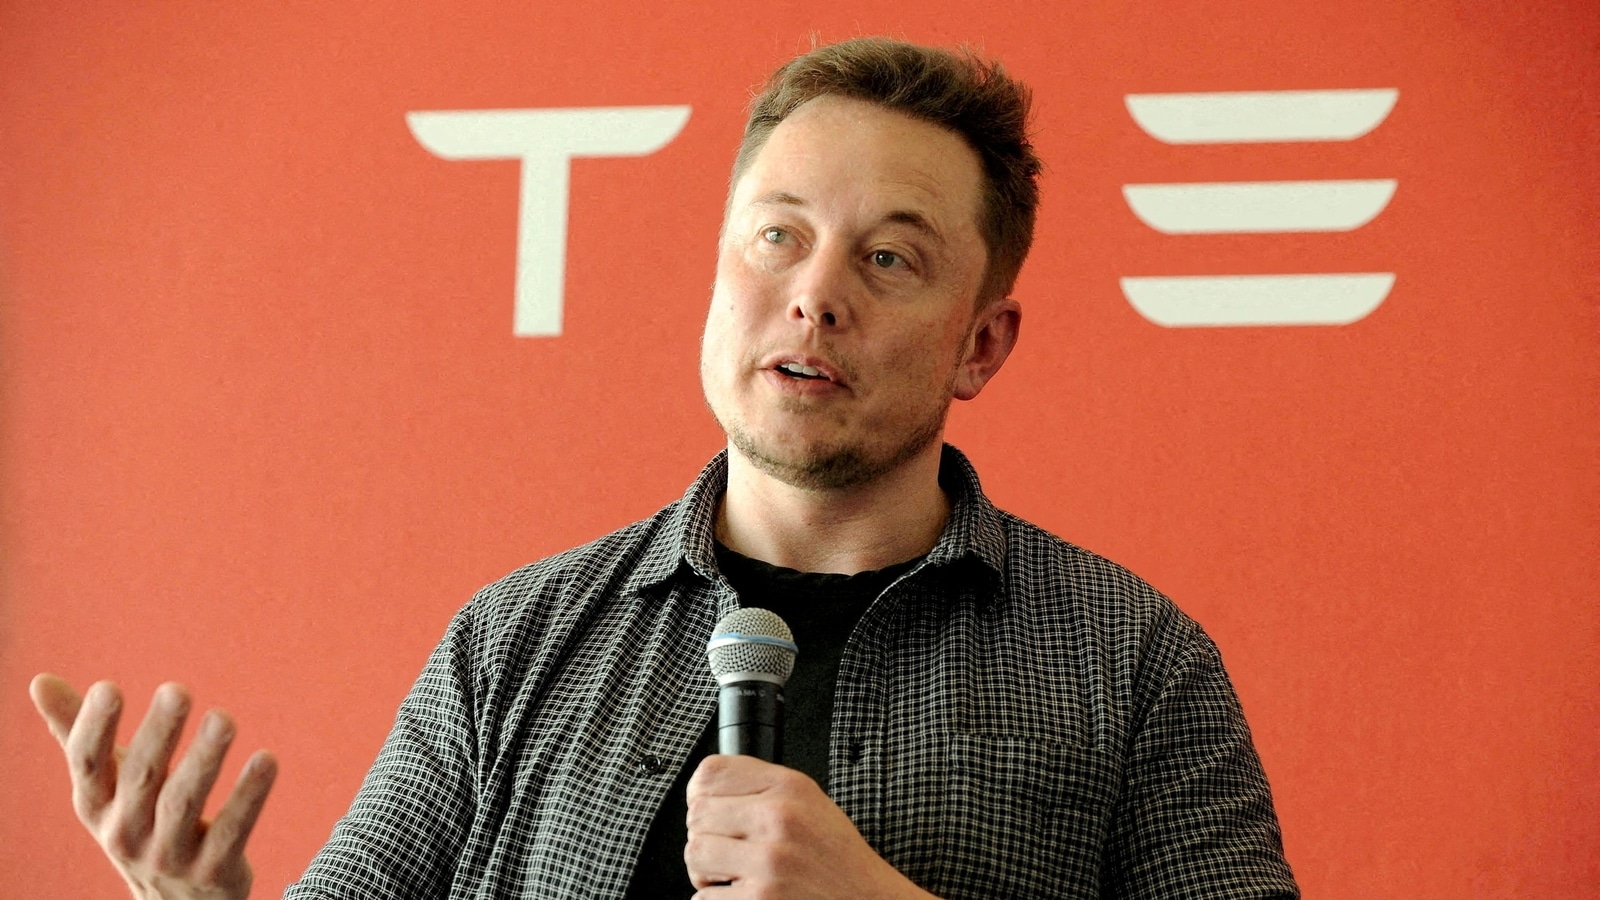 Tesla seeks investors nod for stock split; CEO Elon Musk's friend to leave board